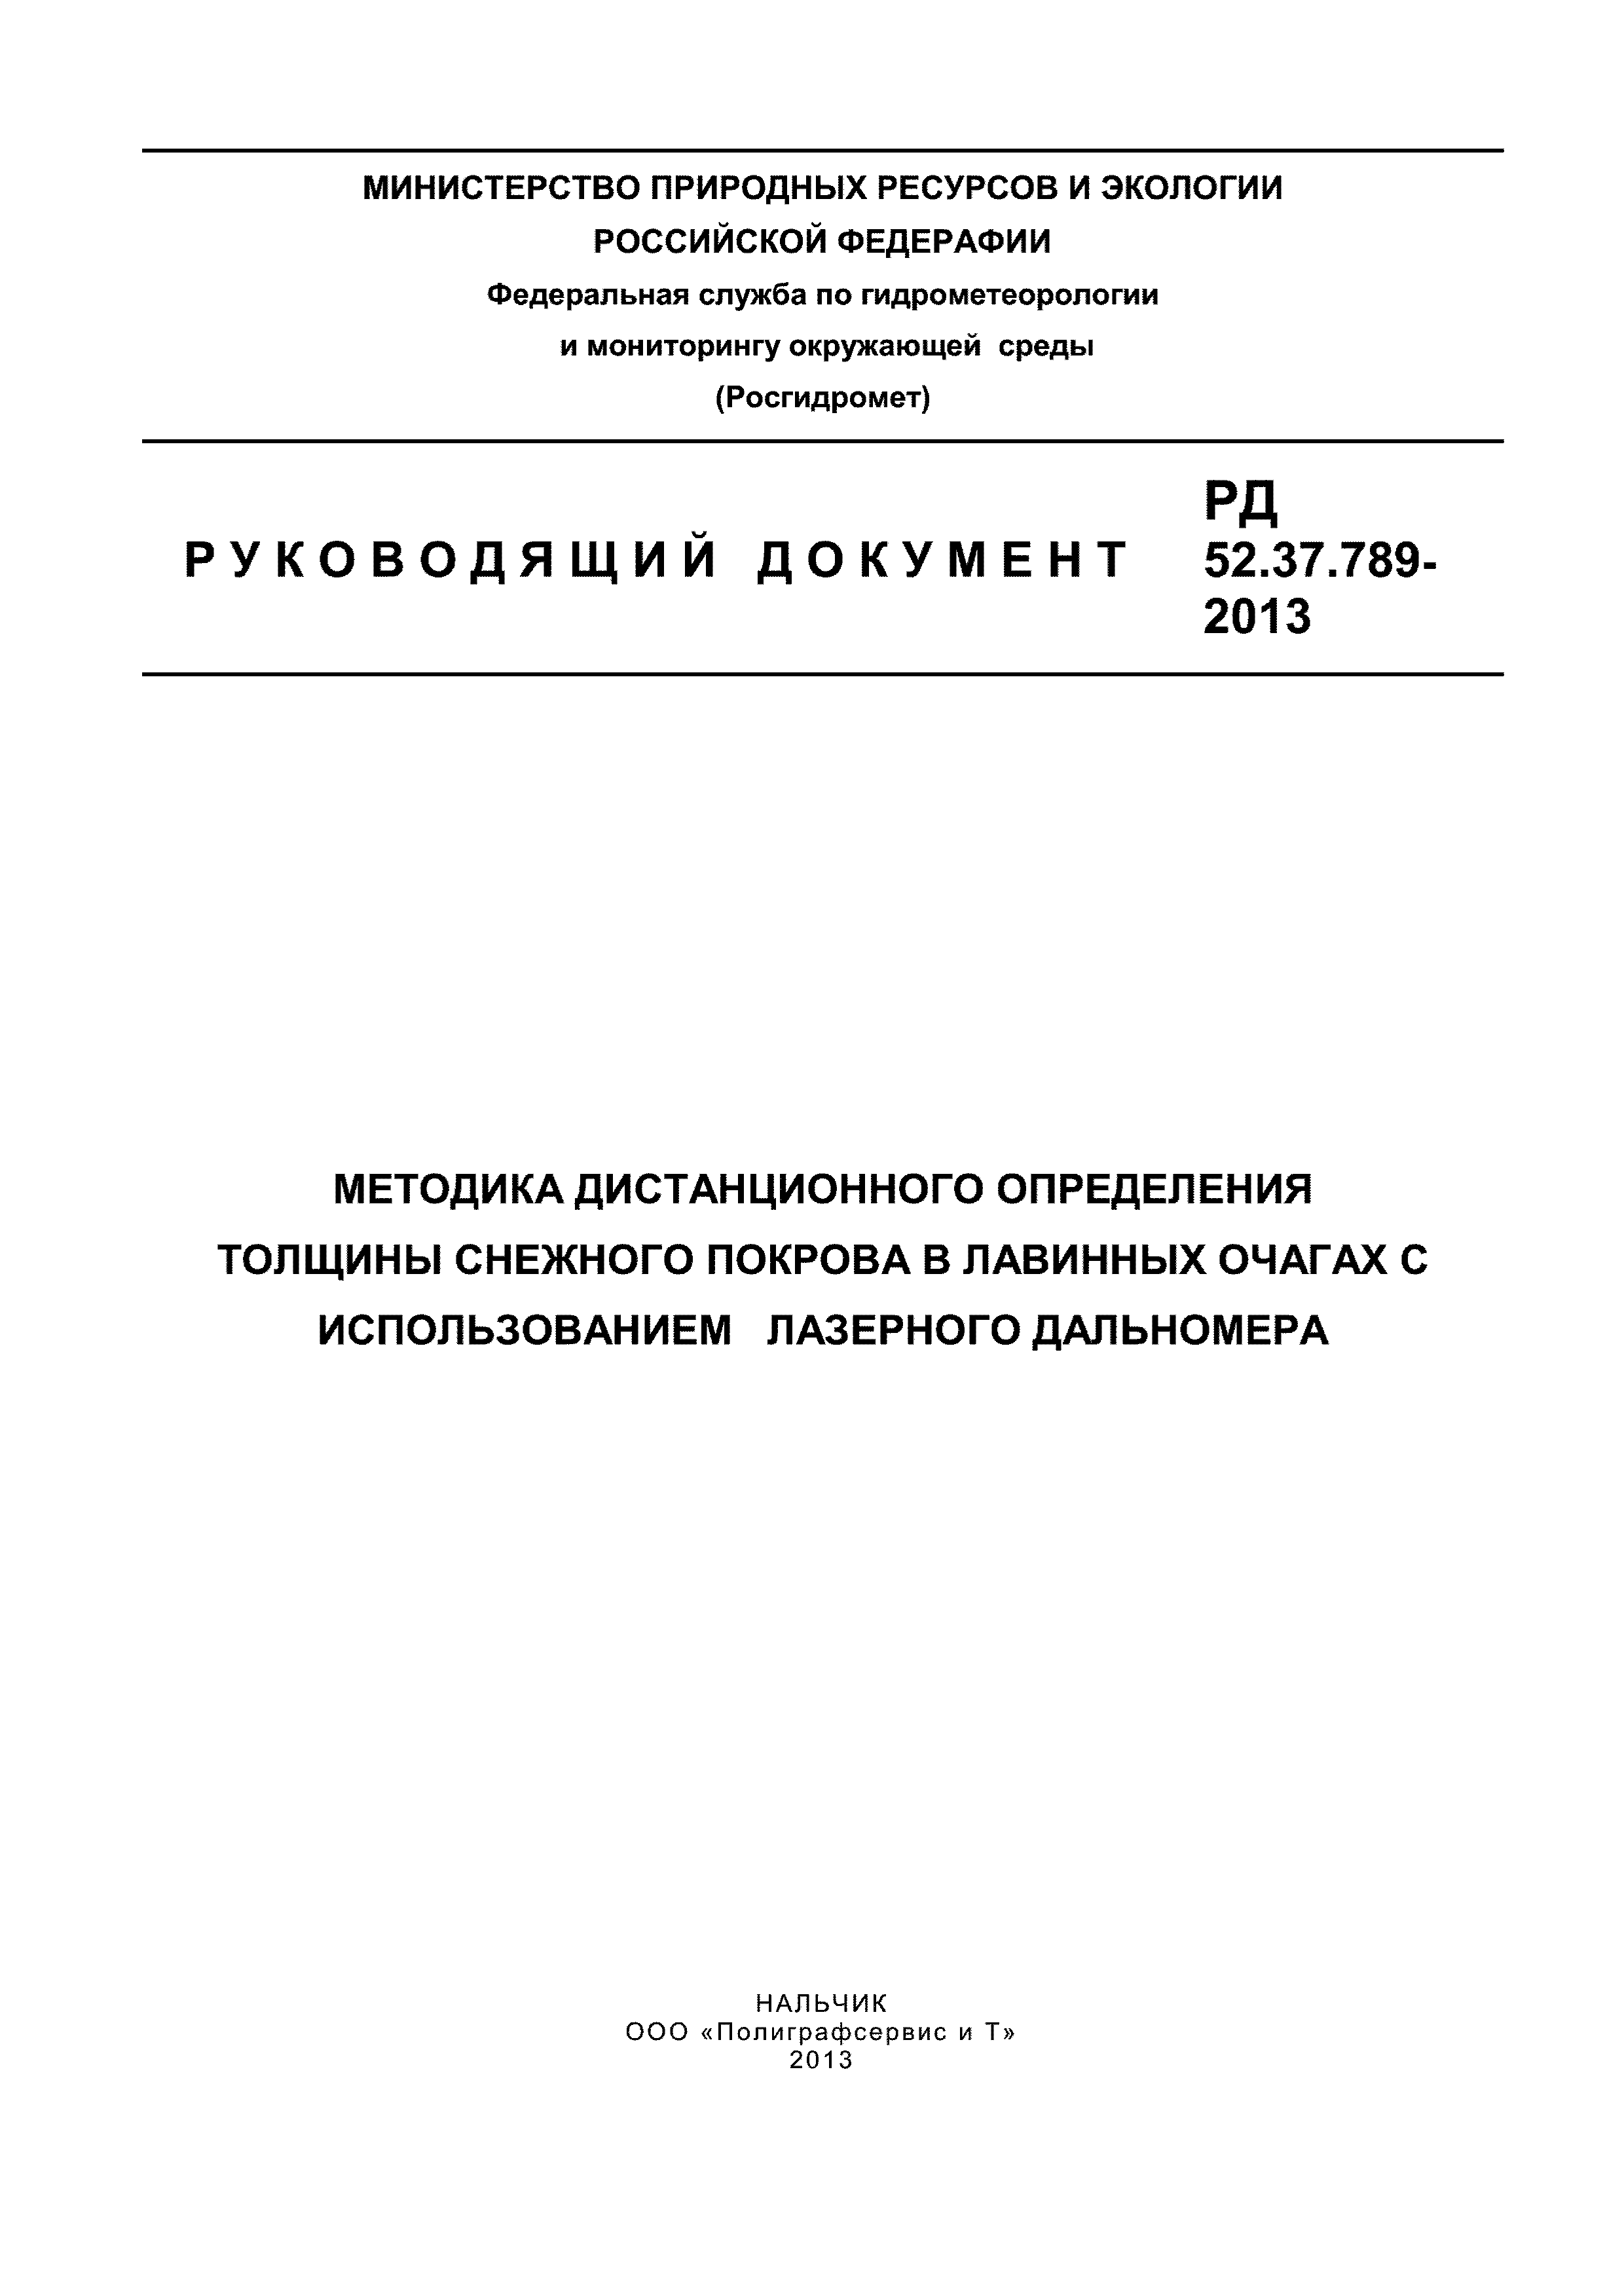 РД 52.37.789-2013